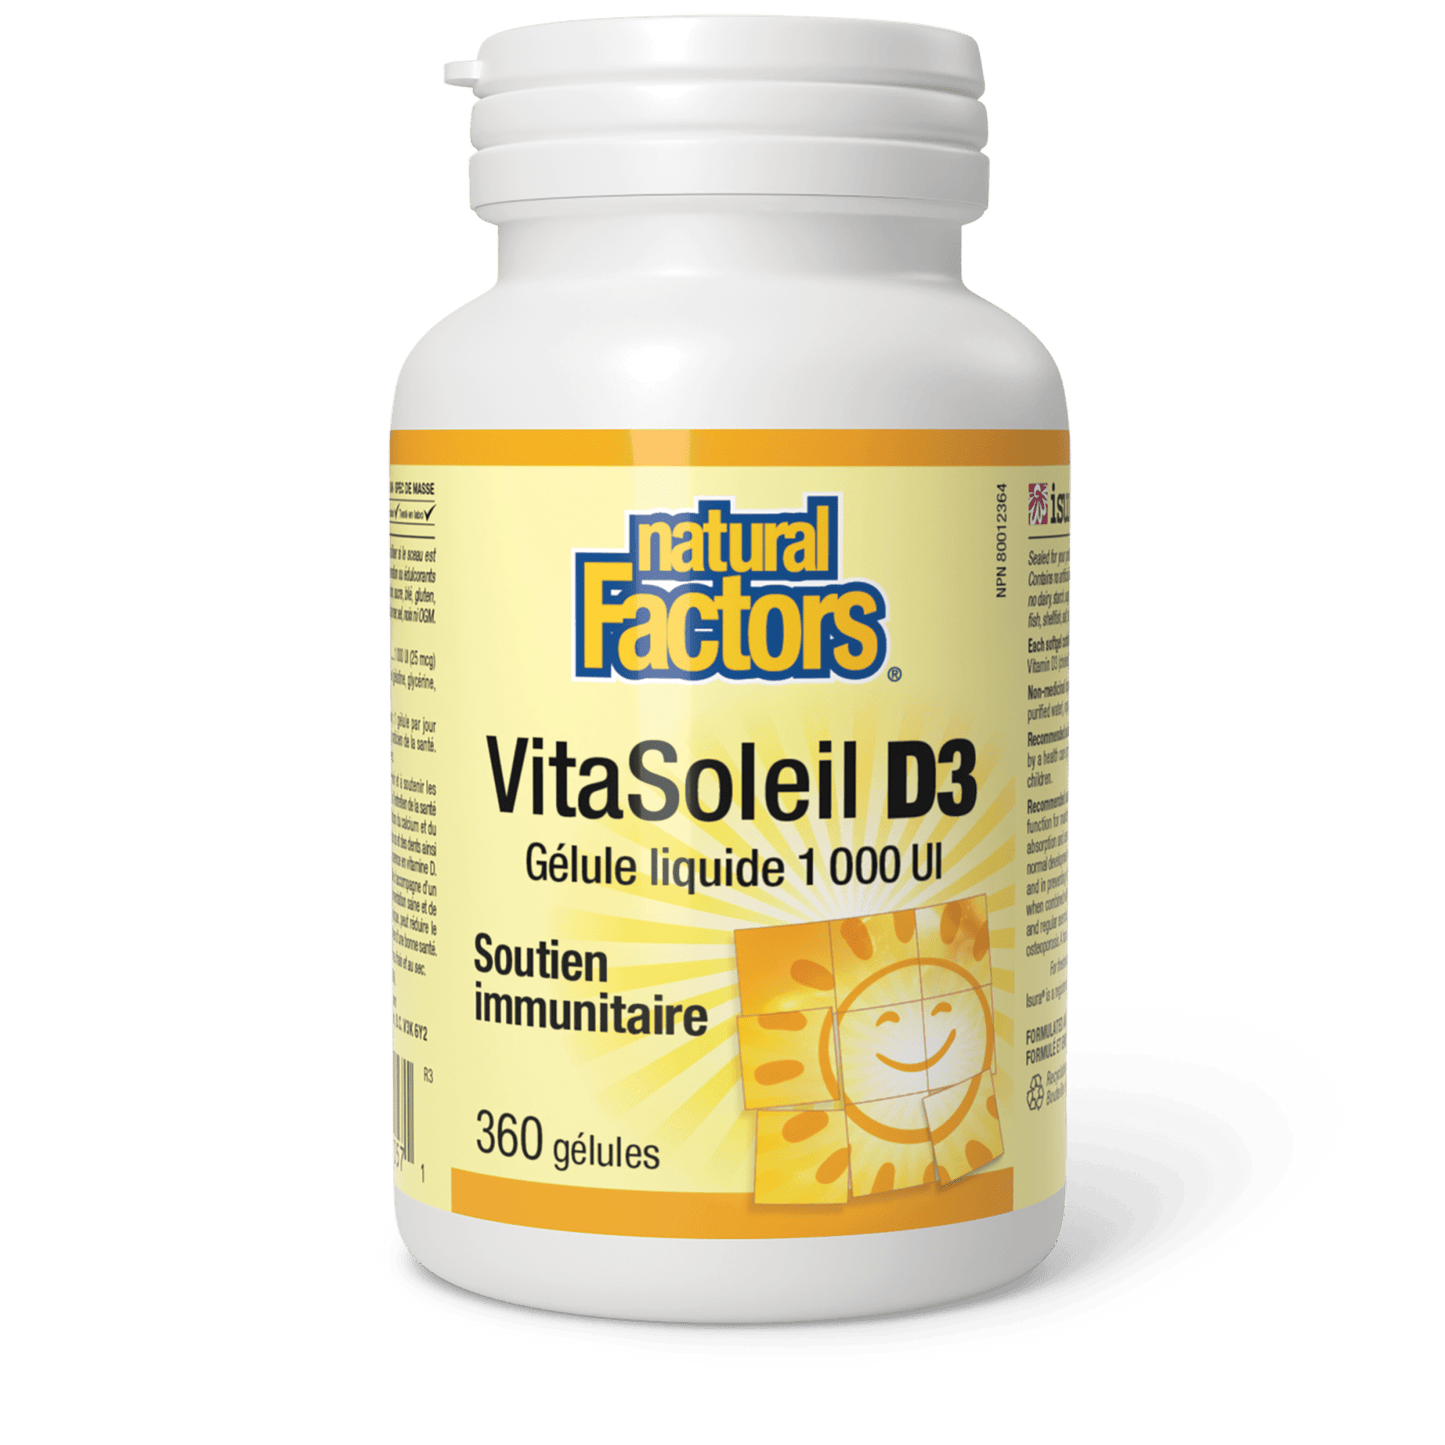 VitaSoleil D3 gélules 1 000 UI, Natural Factors|v|image|1057